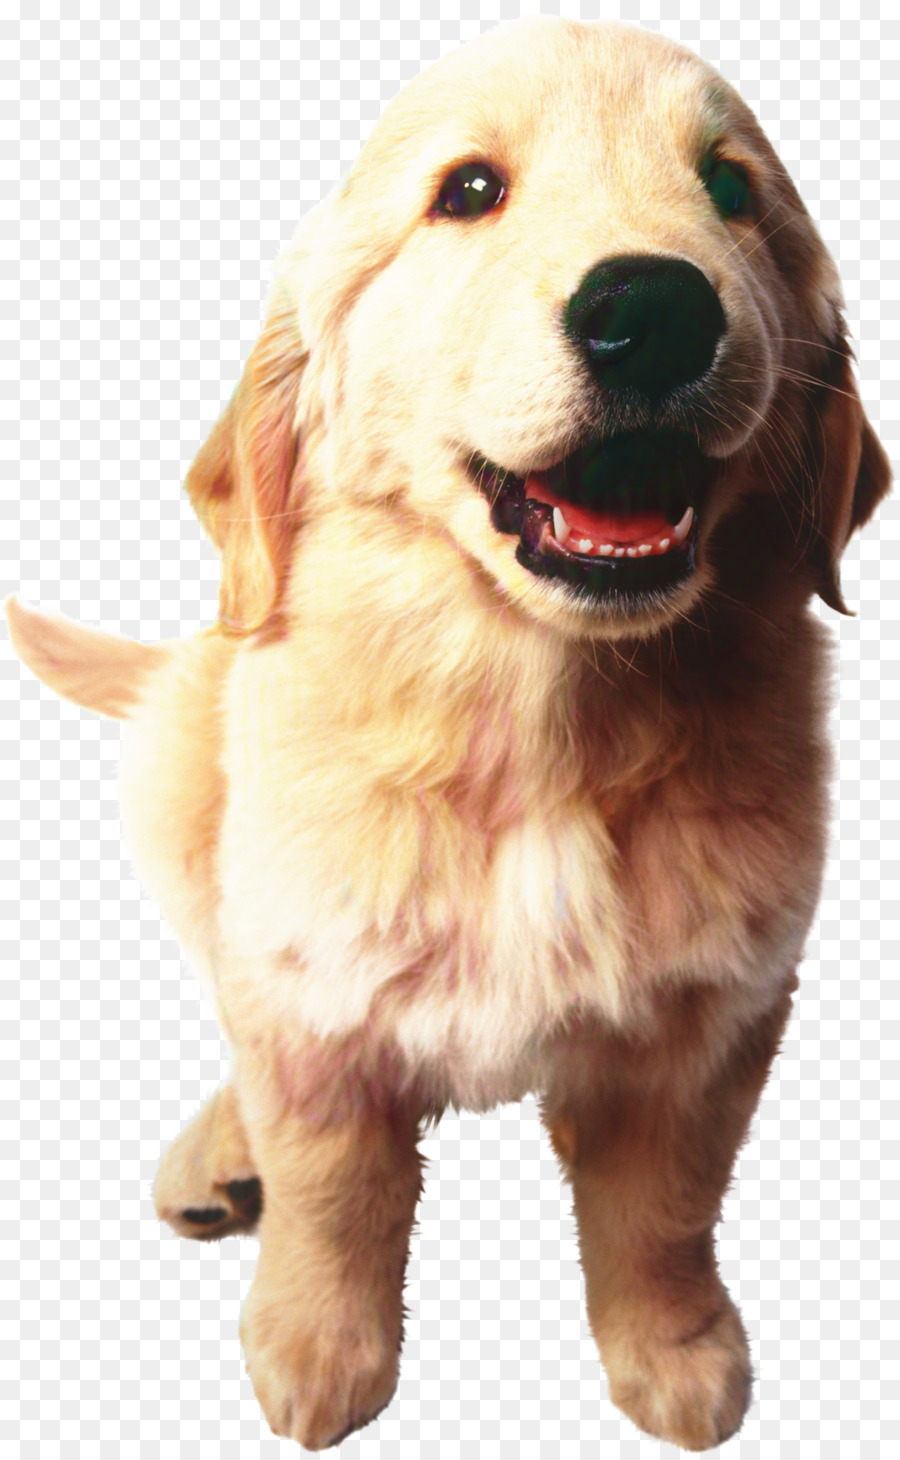 Golden Retriever Puppy Decal Sticker -  png download - 1936*3136 - Free Transparent Golden Retriever png Download.